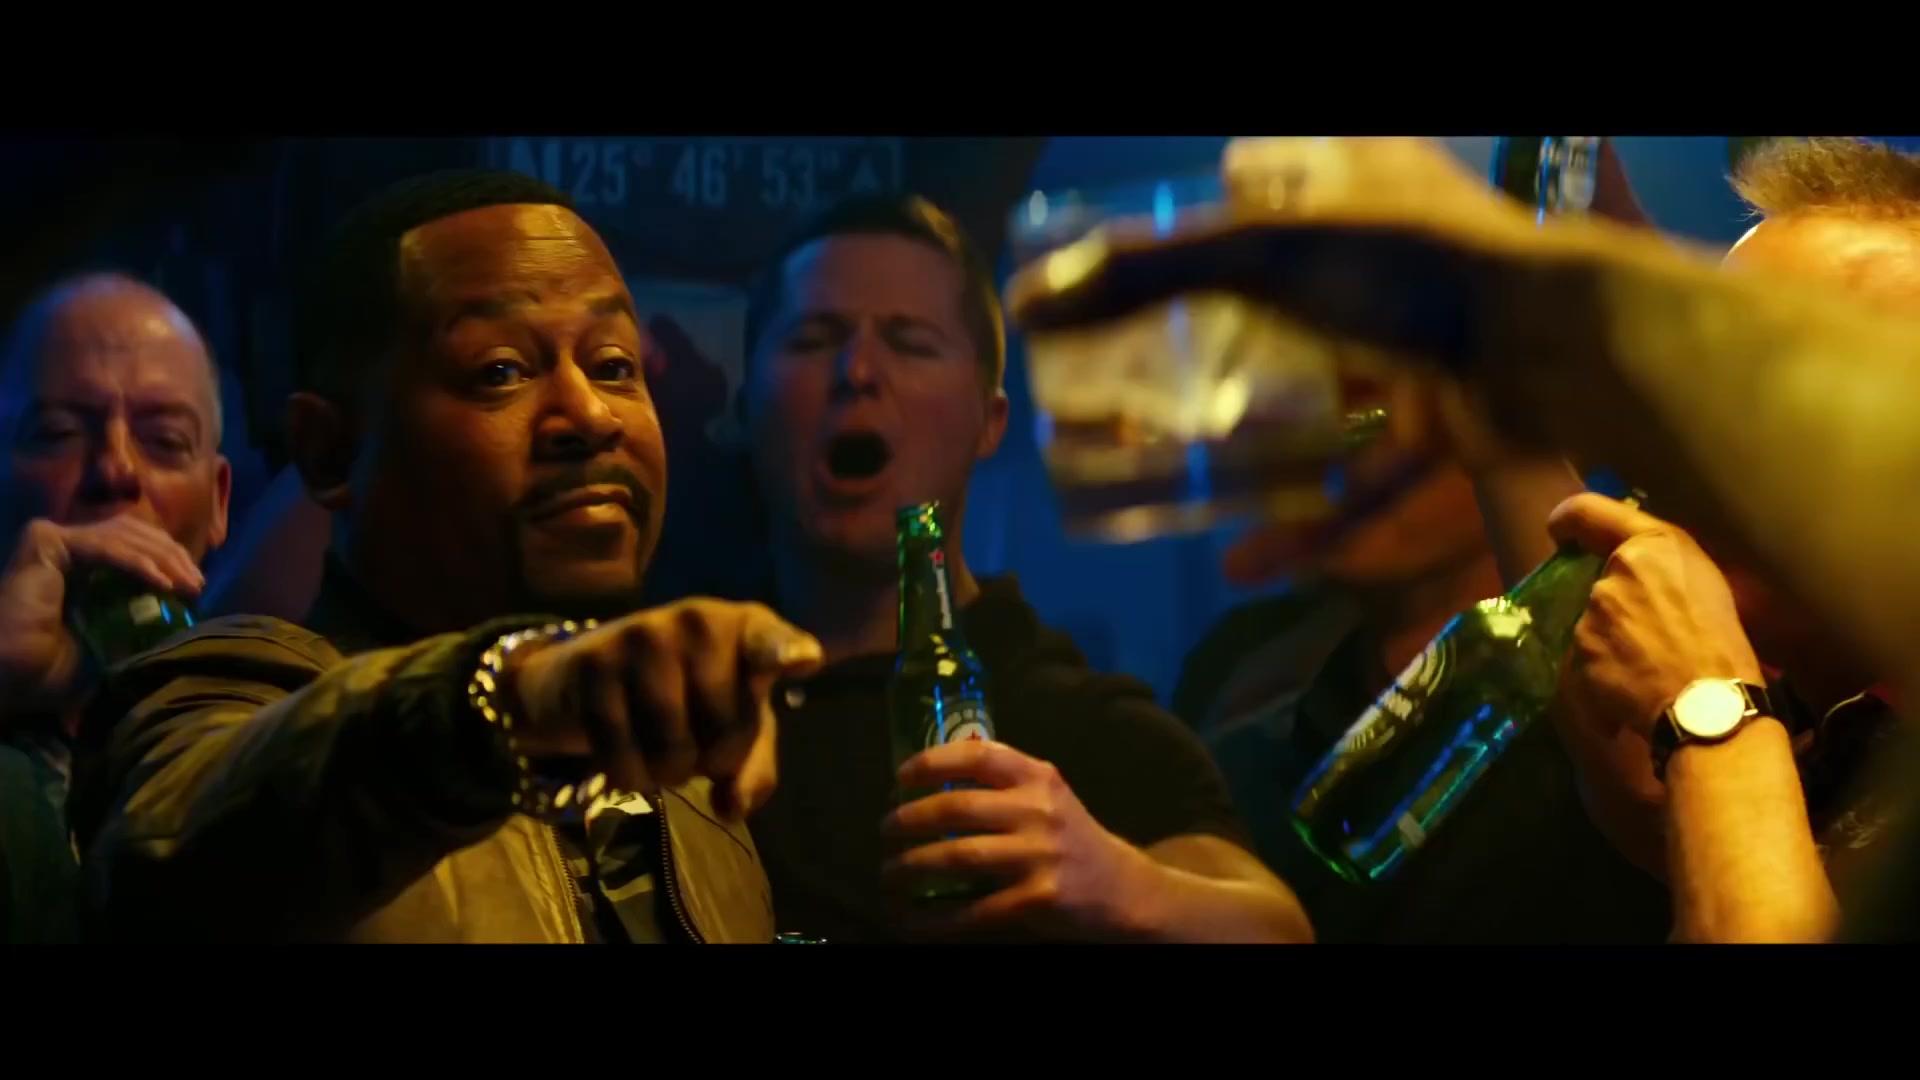 Heineken Beer Bottles in Bad Boys for Life (2020) Movie